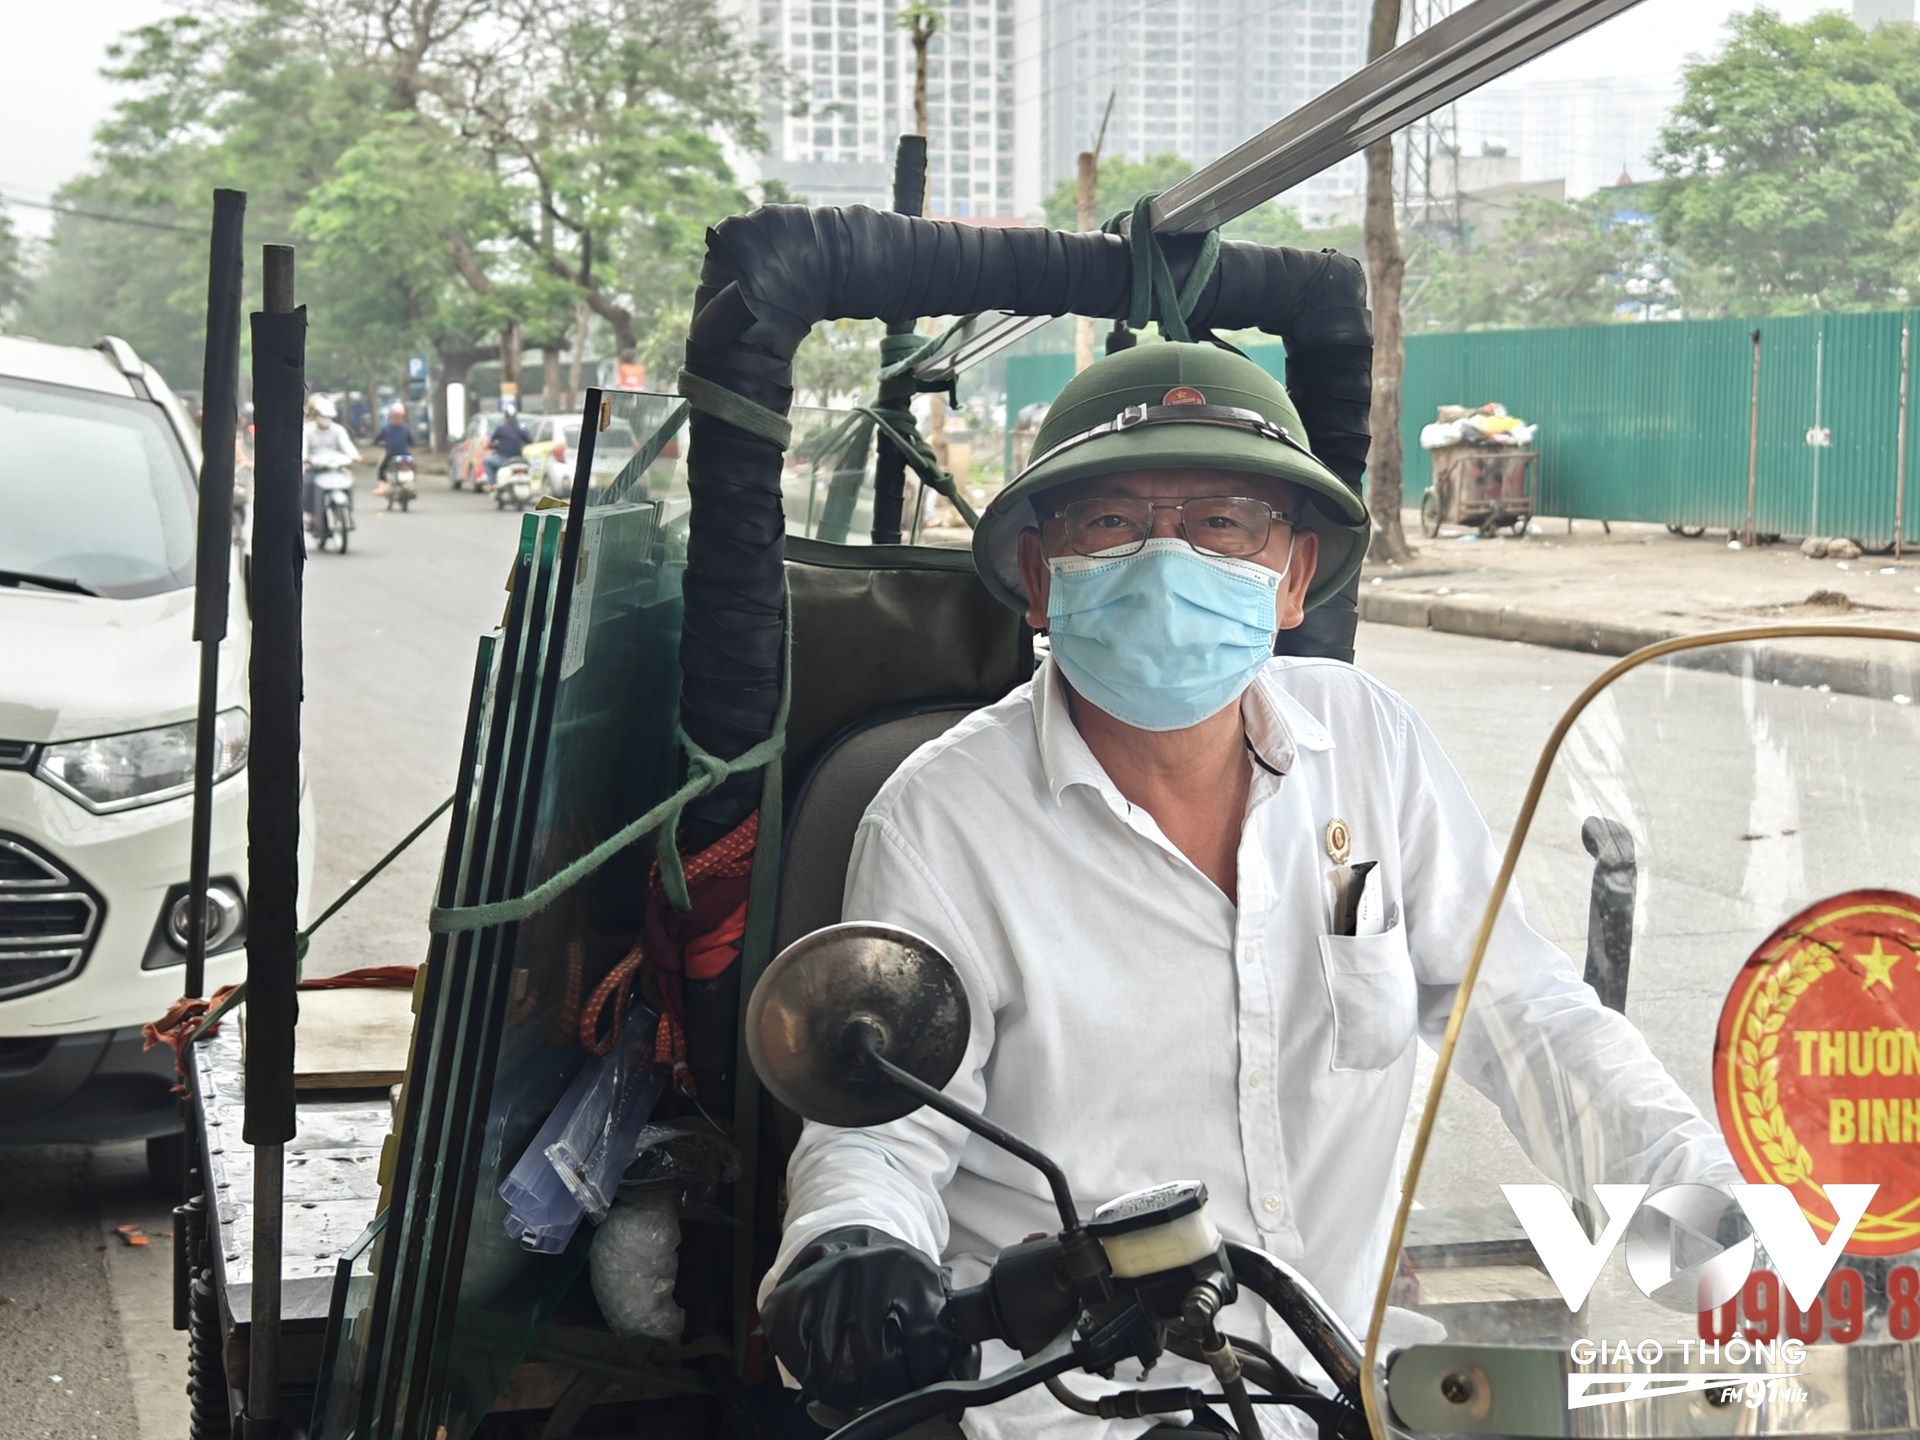 Thành phố Hà Nội từng có lộ trình loại bỏ dần xe tự chế, xe ba bánh cũ nát, và có chính sách chuyển đổi nghề cho người lái loại xe này. Tuy nhiên, nhóm được hỗ trợ chuyển đổi lại chưa chủ động tham gia.